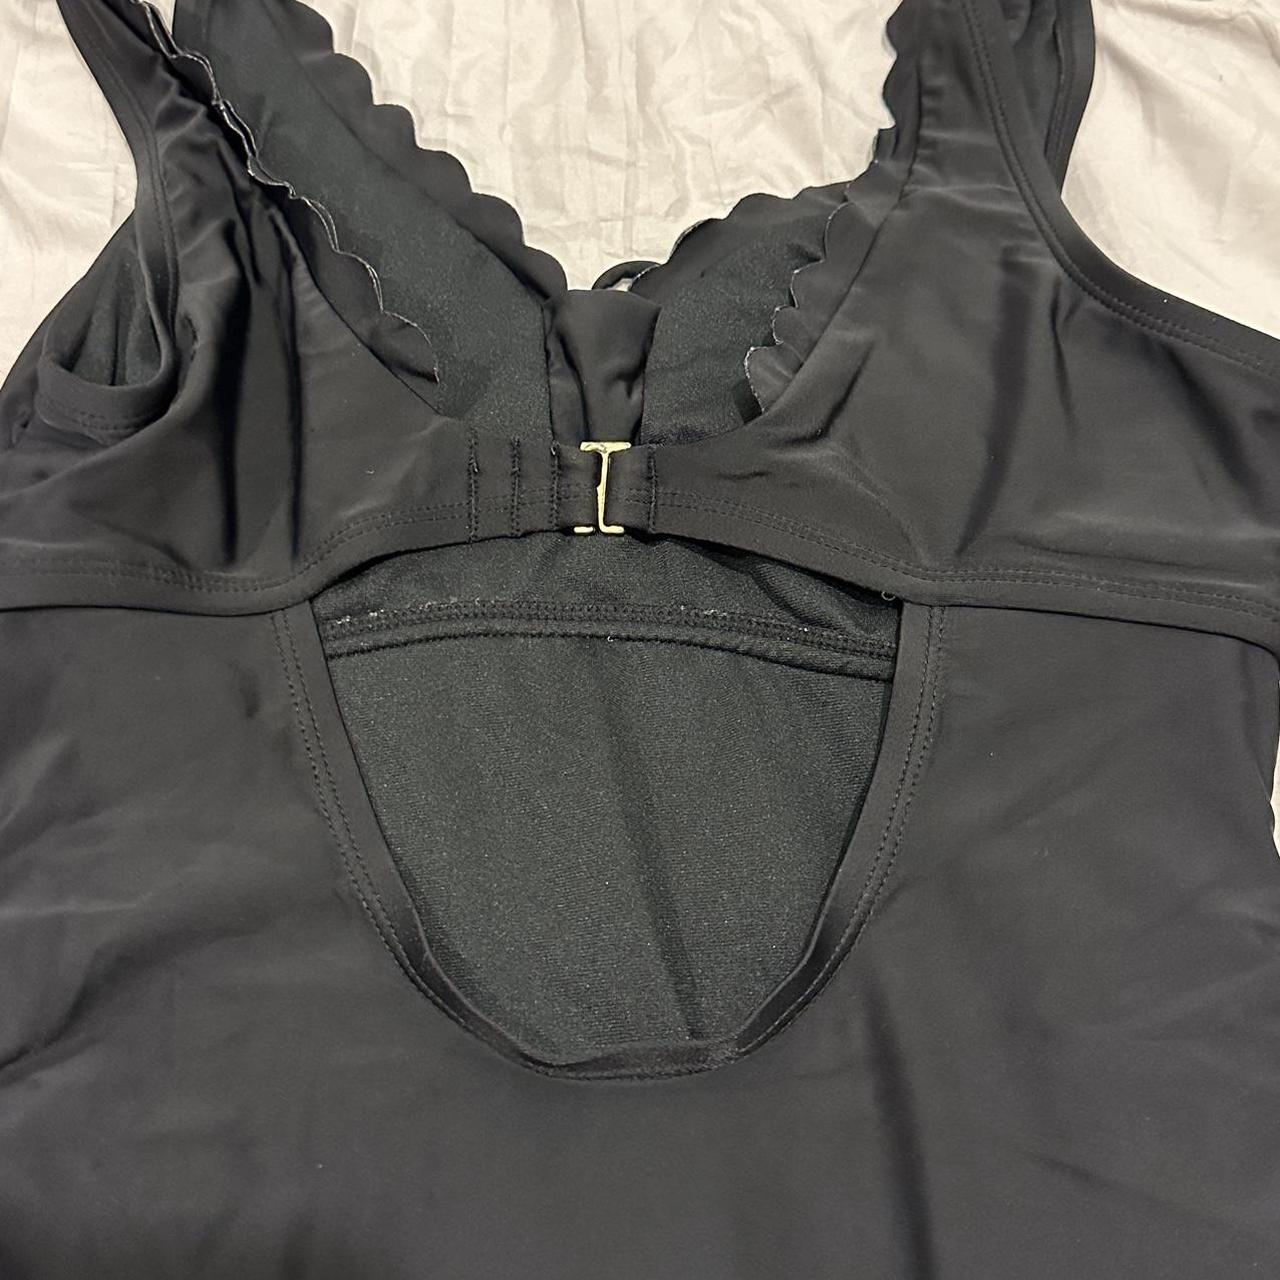 Kona Sol Women's Swimsuit-one-piece | Depop